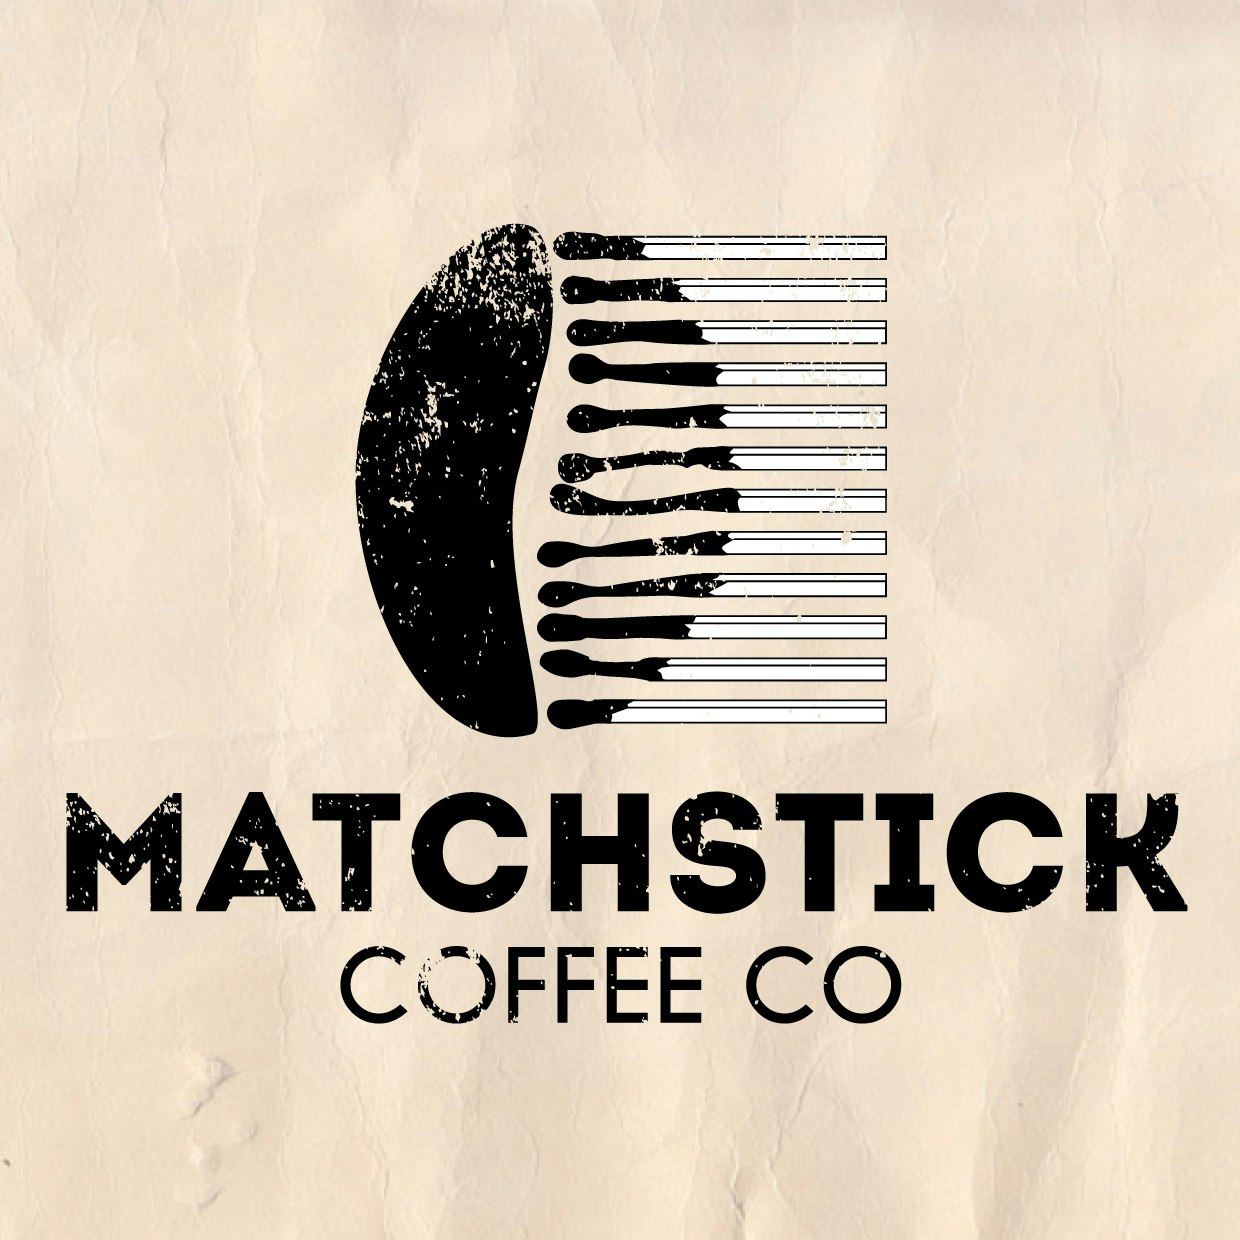 Diseño del logo del café Matchstick